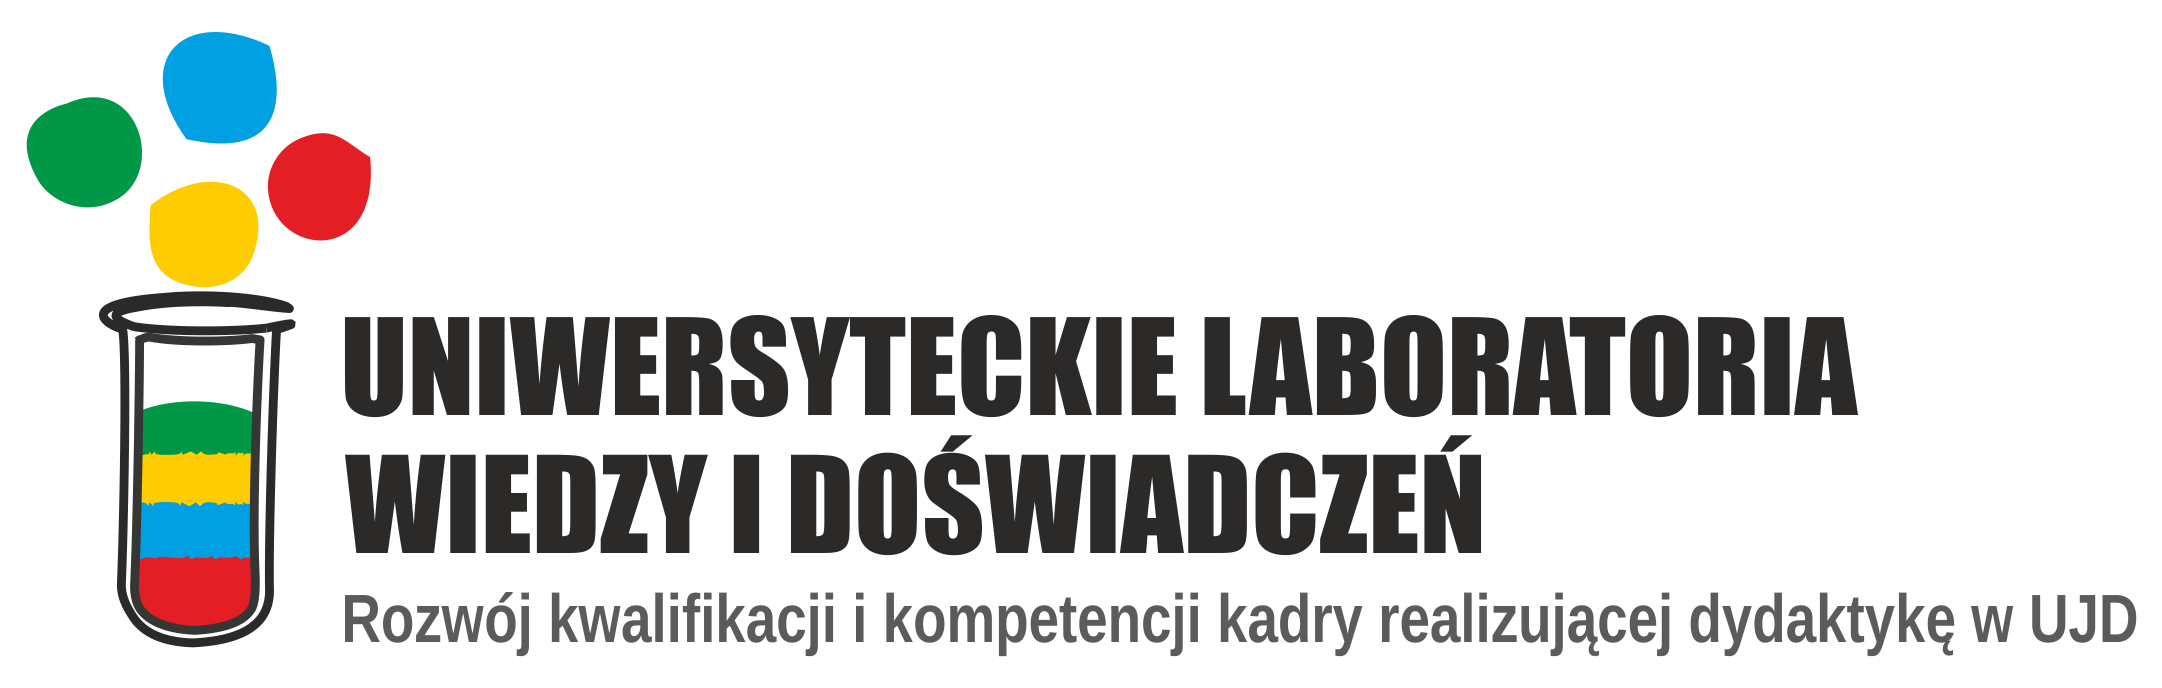 Logo projektu "Uniwersyteckie laboratoria wiedzy i doświadczeń"